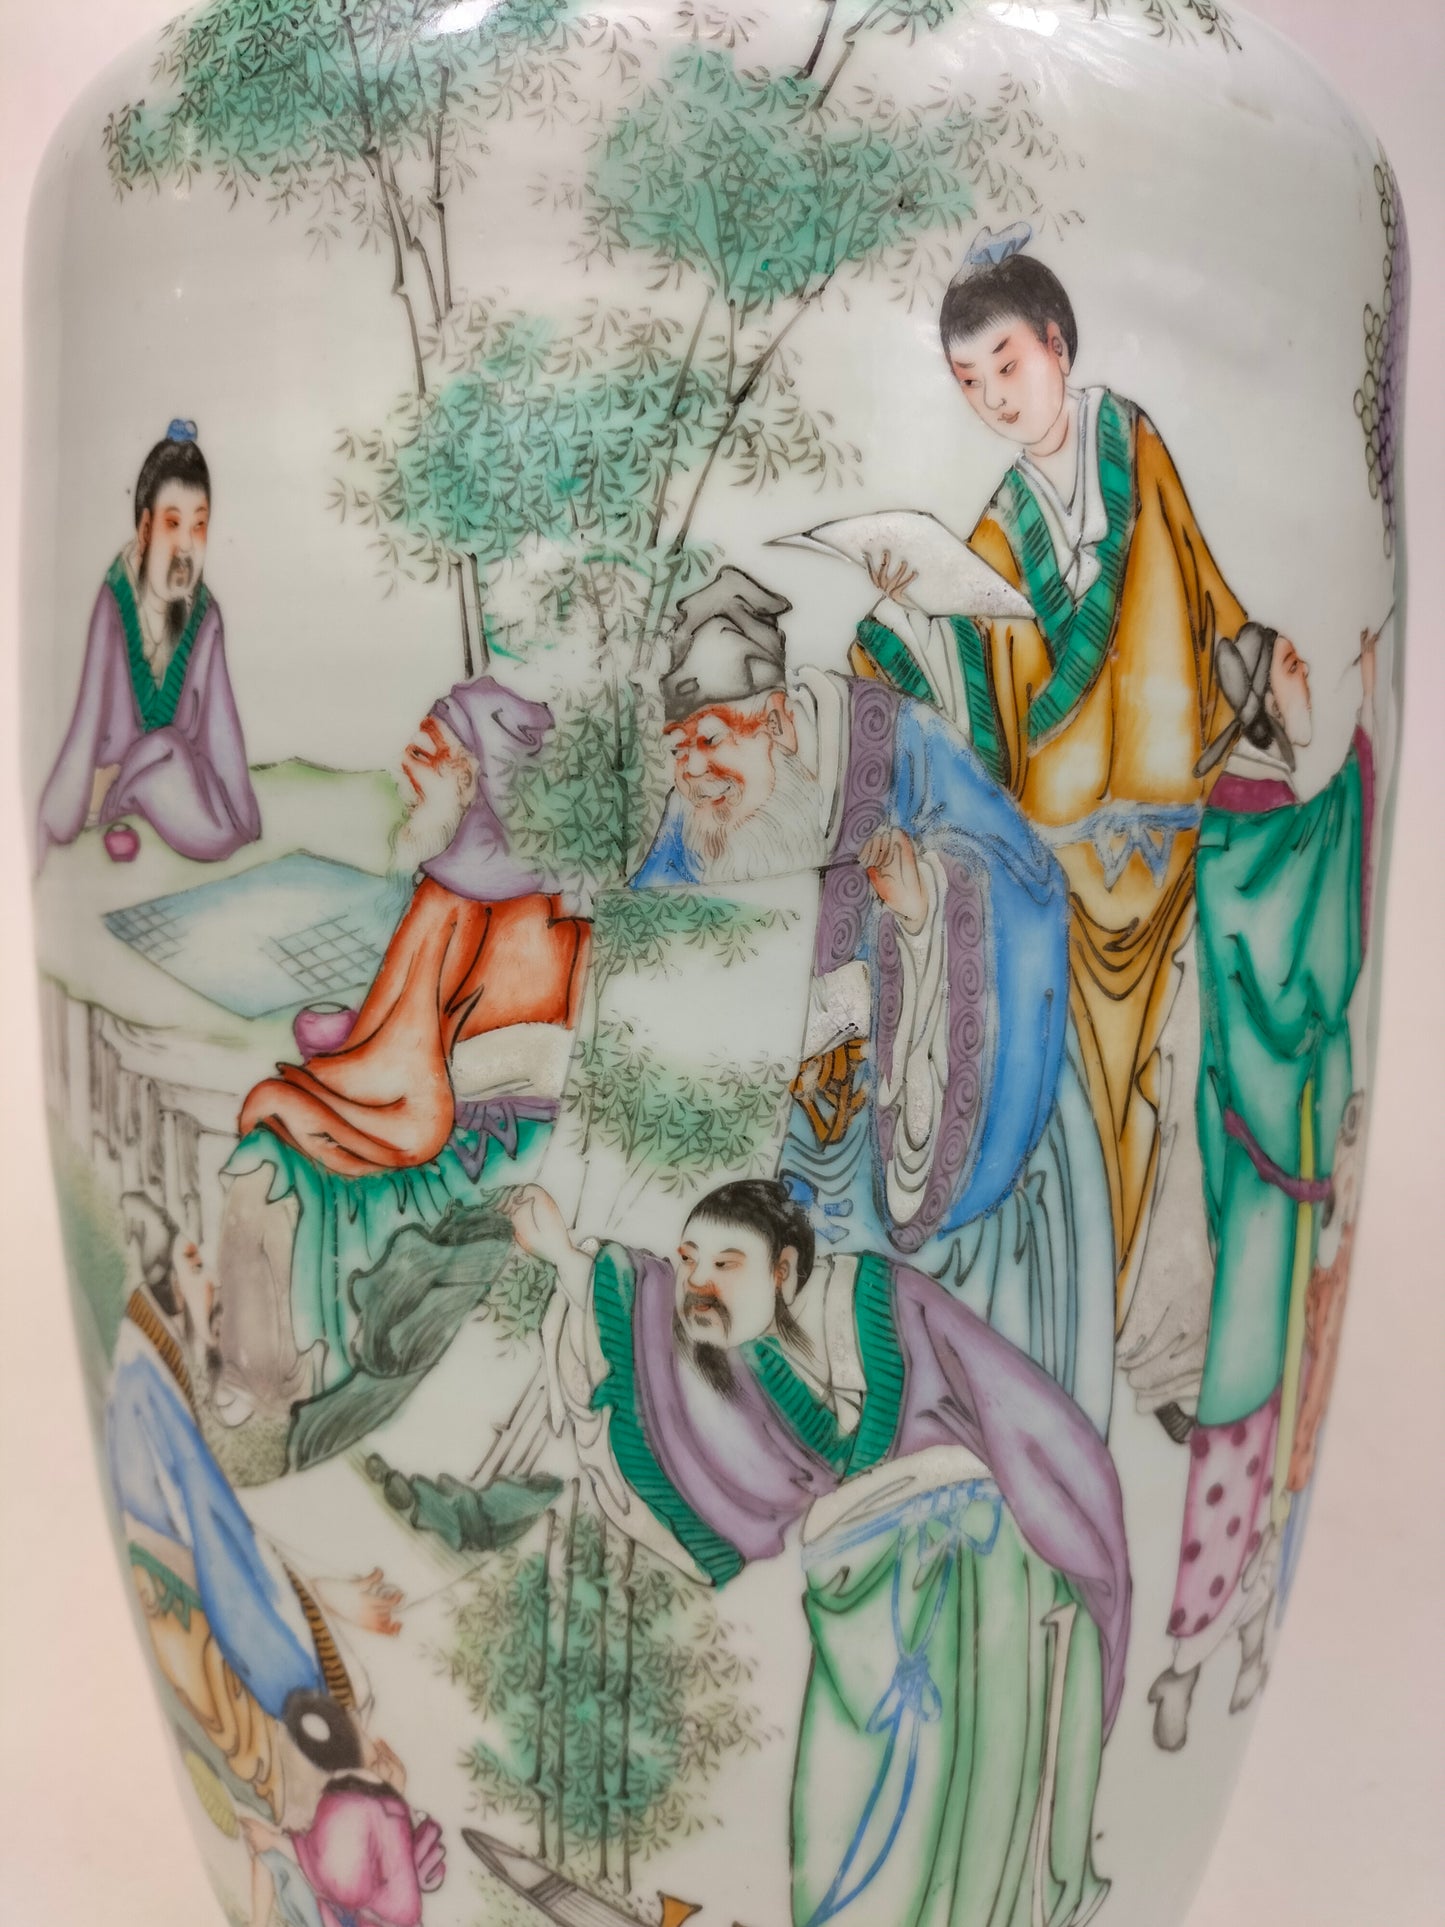 Grande vaso chinês antigo qianjiang decorado com sábios // Período da República (1912-1949)